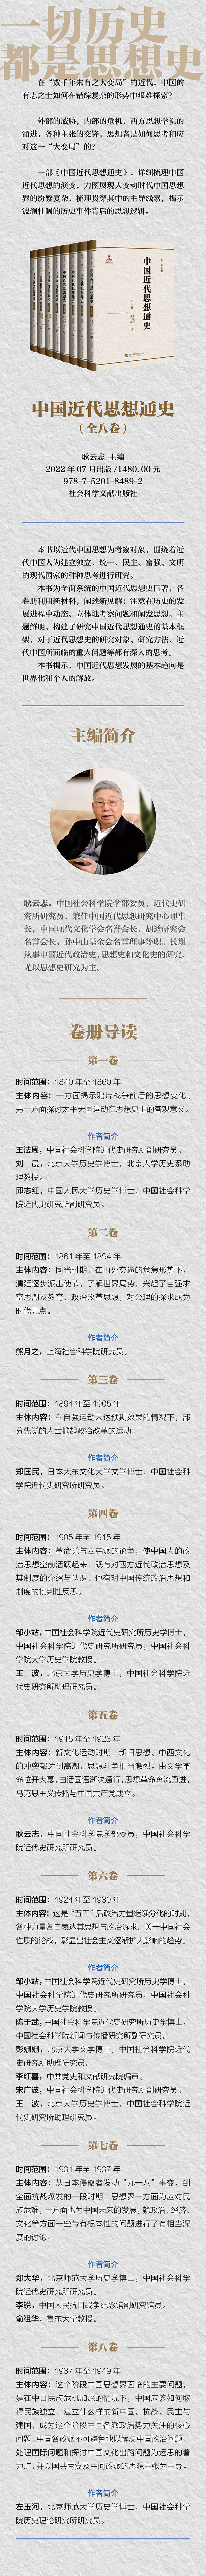 中国近代思想通史宣传图-长图定版.jpg